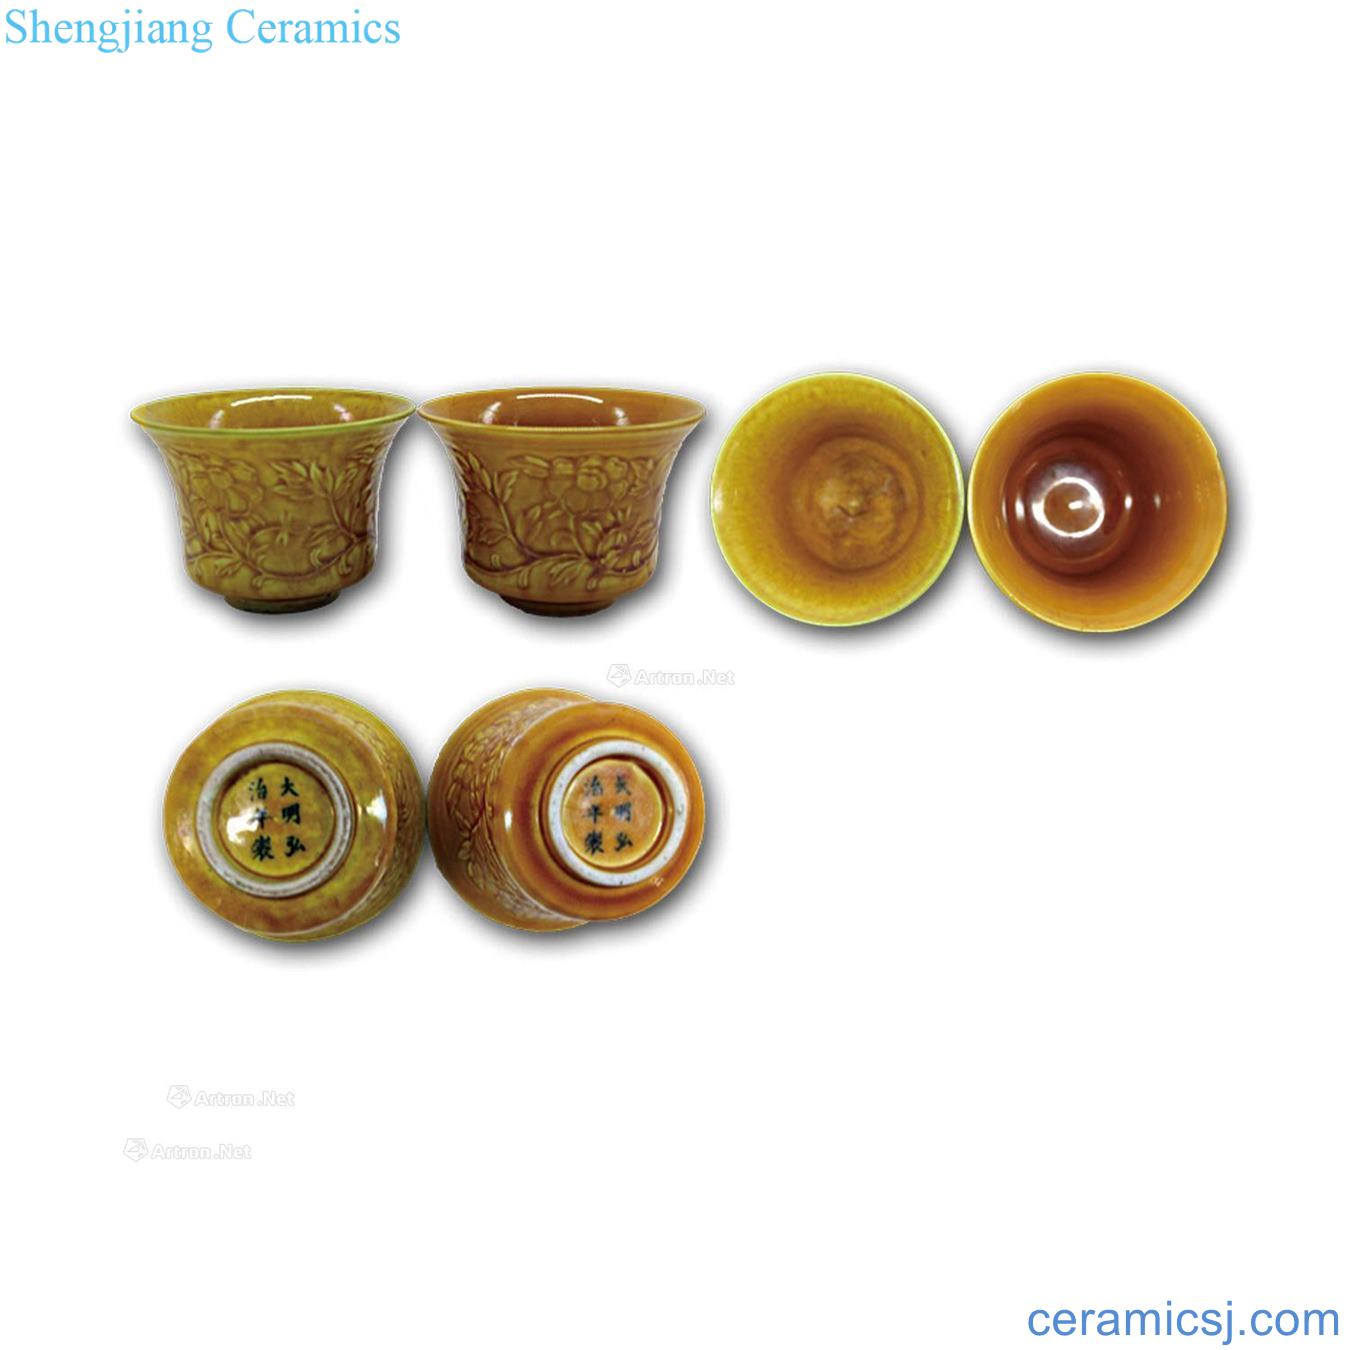 Ming hongzhi yellow glaze cup (a)